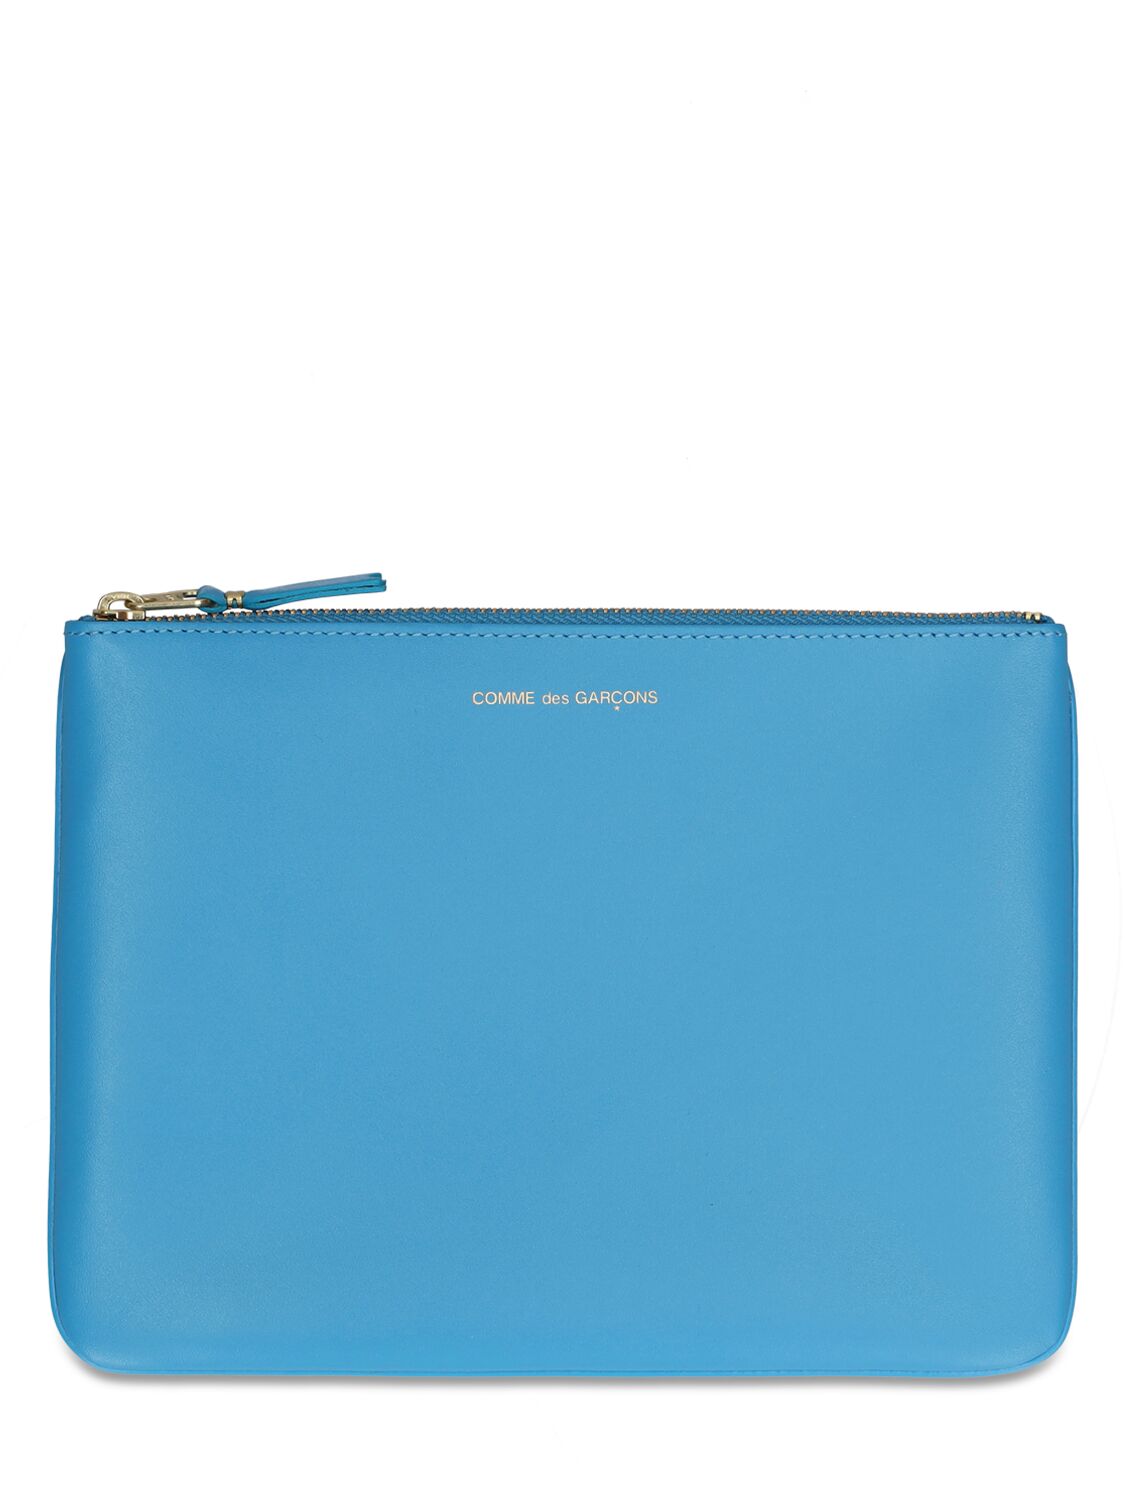 Comme Des Garçons Classic Leather Line Wallet In Blue